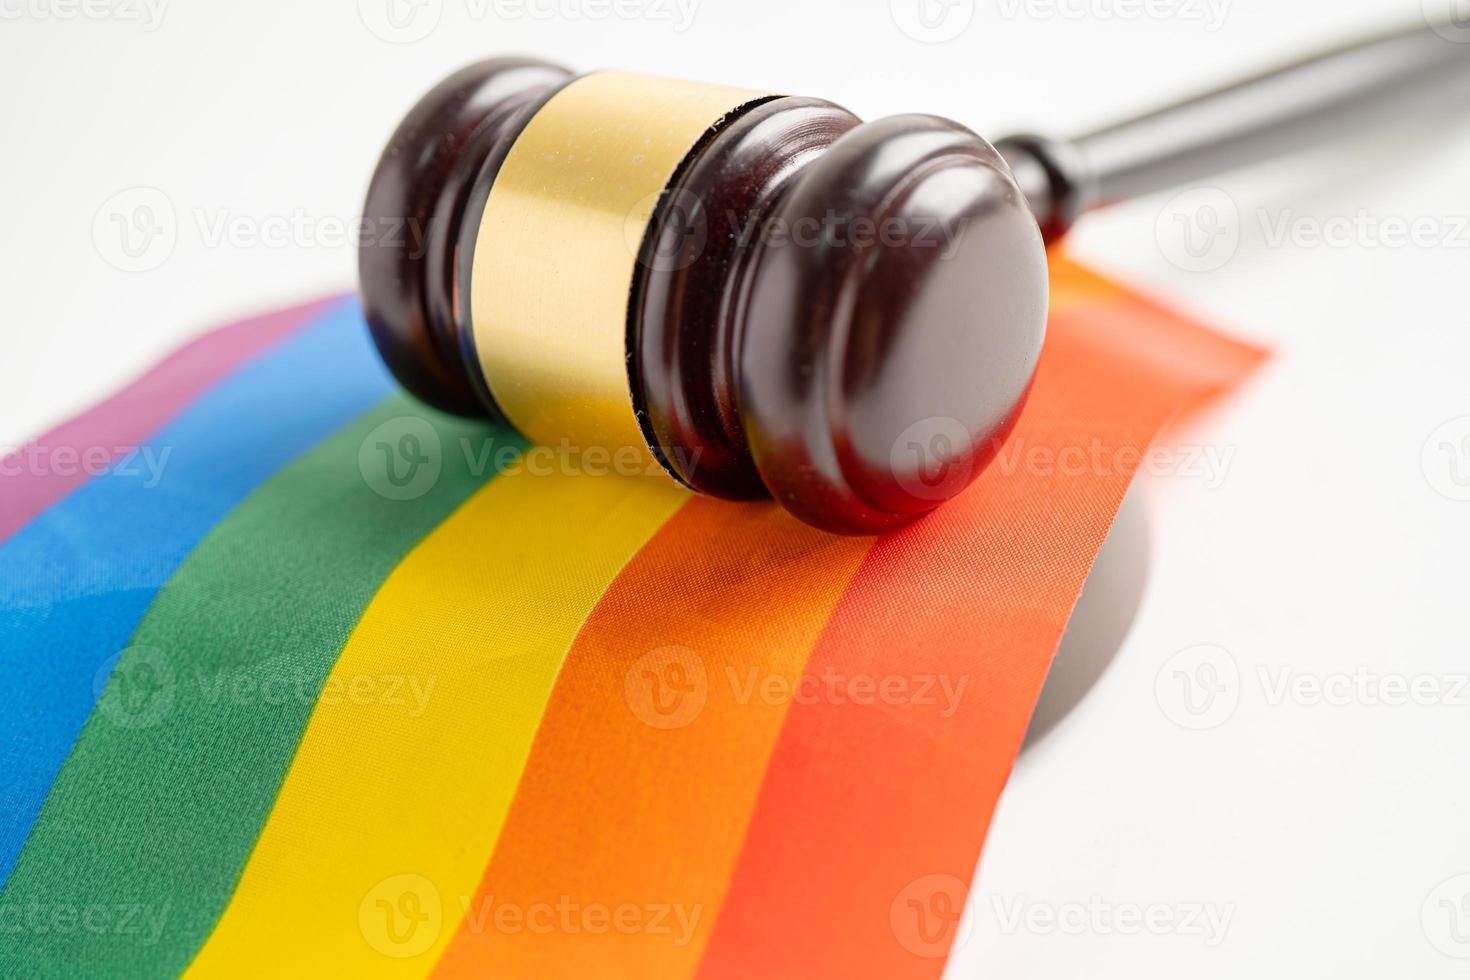 hamer voor rechter-advocaat op regenboogvlag, symbool van lgbt-trotsmaand vier jaarlijks in juni sociaal van homo, lesbienne, biseksueel, transgender, mensenrechten. foto